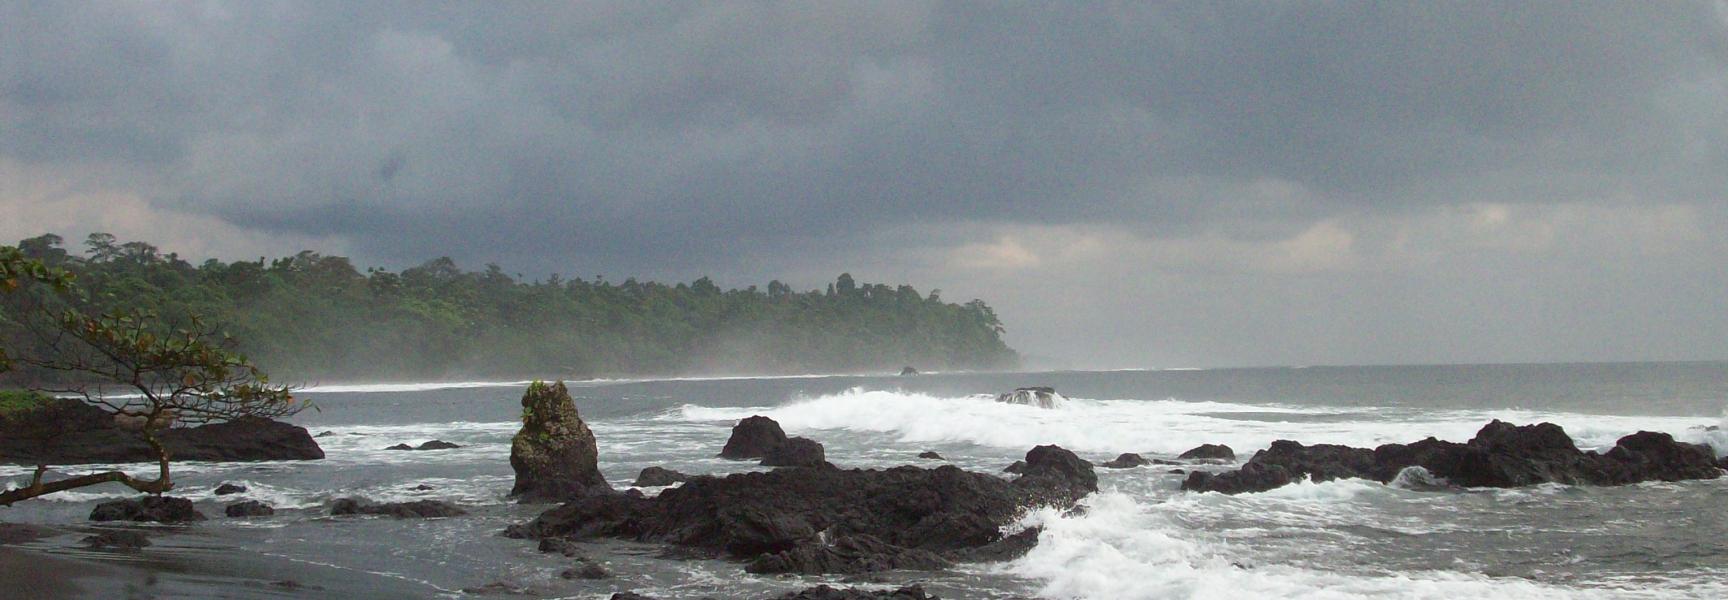 Une plage par temps nuageux en Guinée Équatoriale